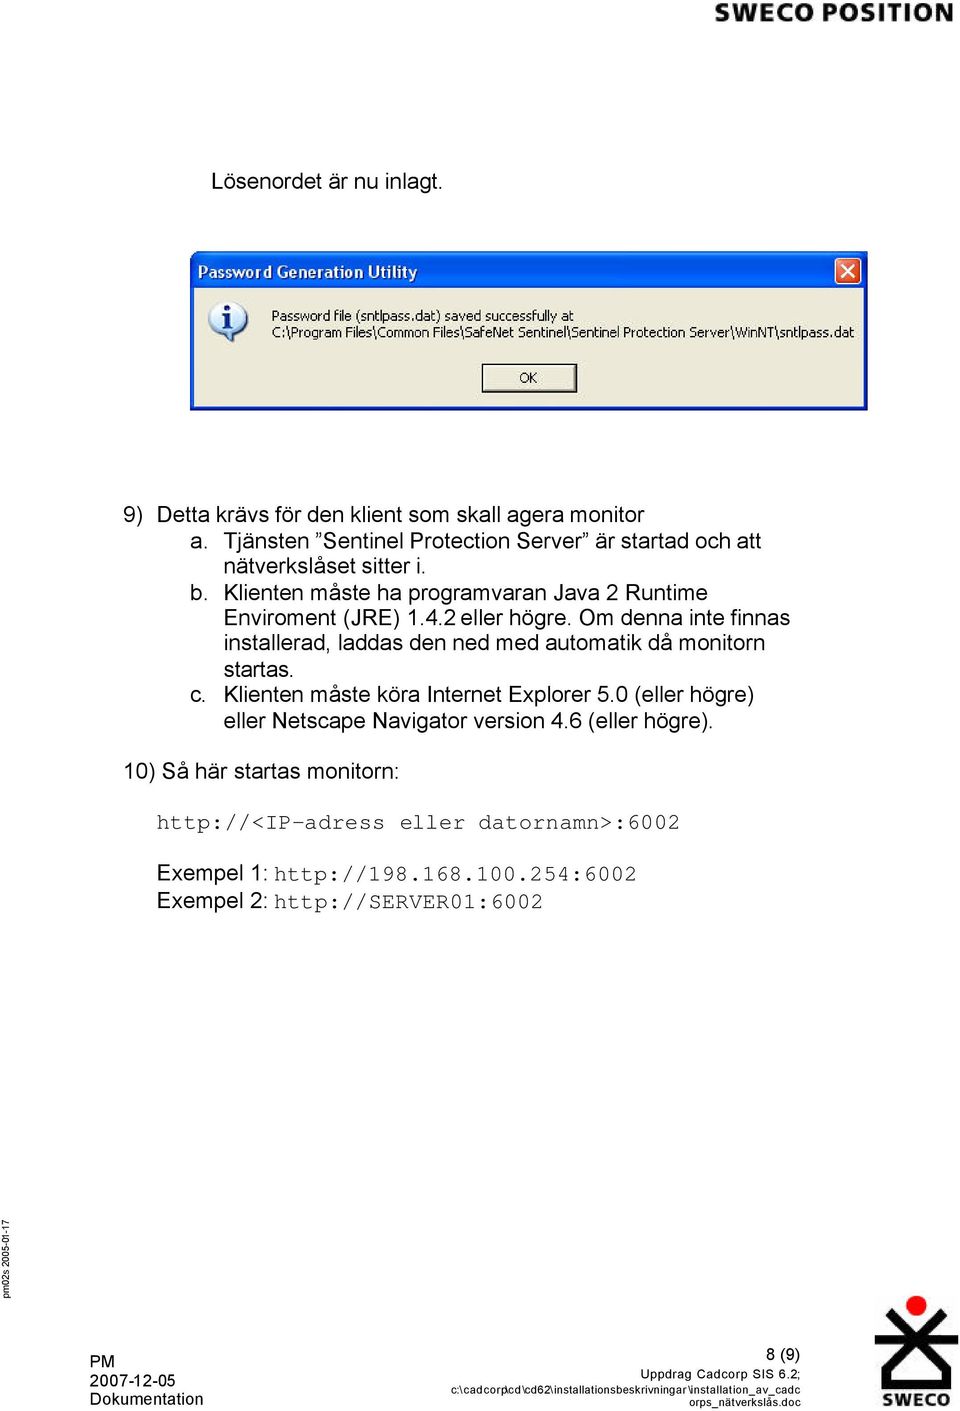 4.2 eller högre. Om denna inte finnas installerad, laddas den ned med automatik då monitorn startas. c. Klienten måste köra Internet Explorer 5.